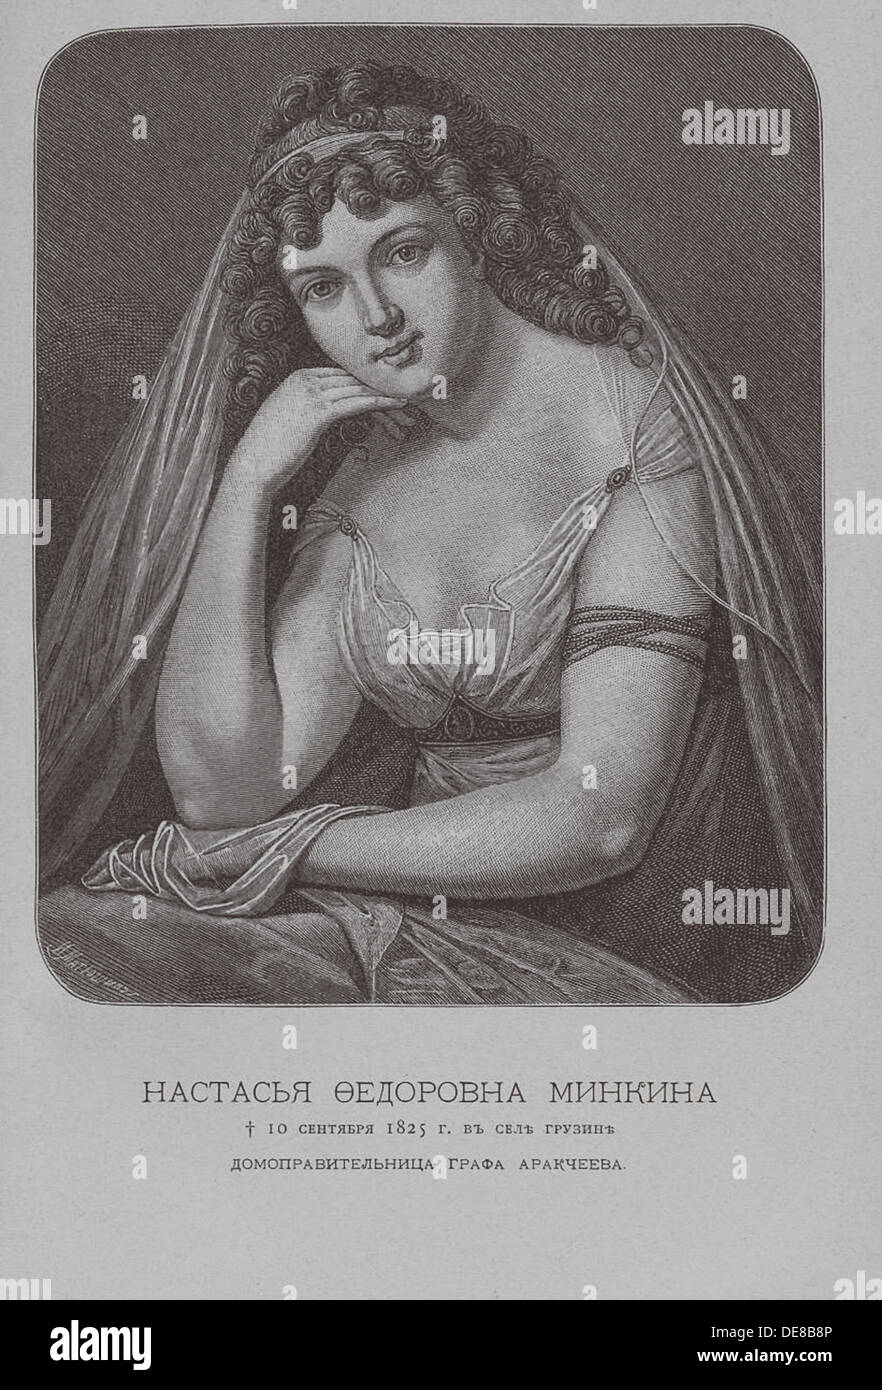 Nastasia Fyodorovna Minkina, conte Arakceev della governante e maestra. Artista: Borel, Pyotr Fyodorovich (1829-1898) Foto Stock